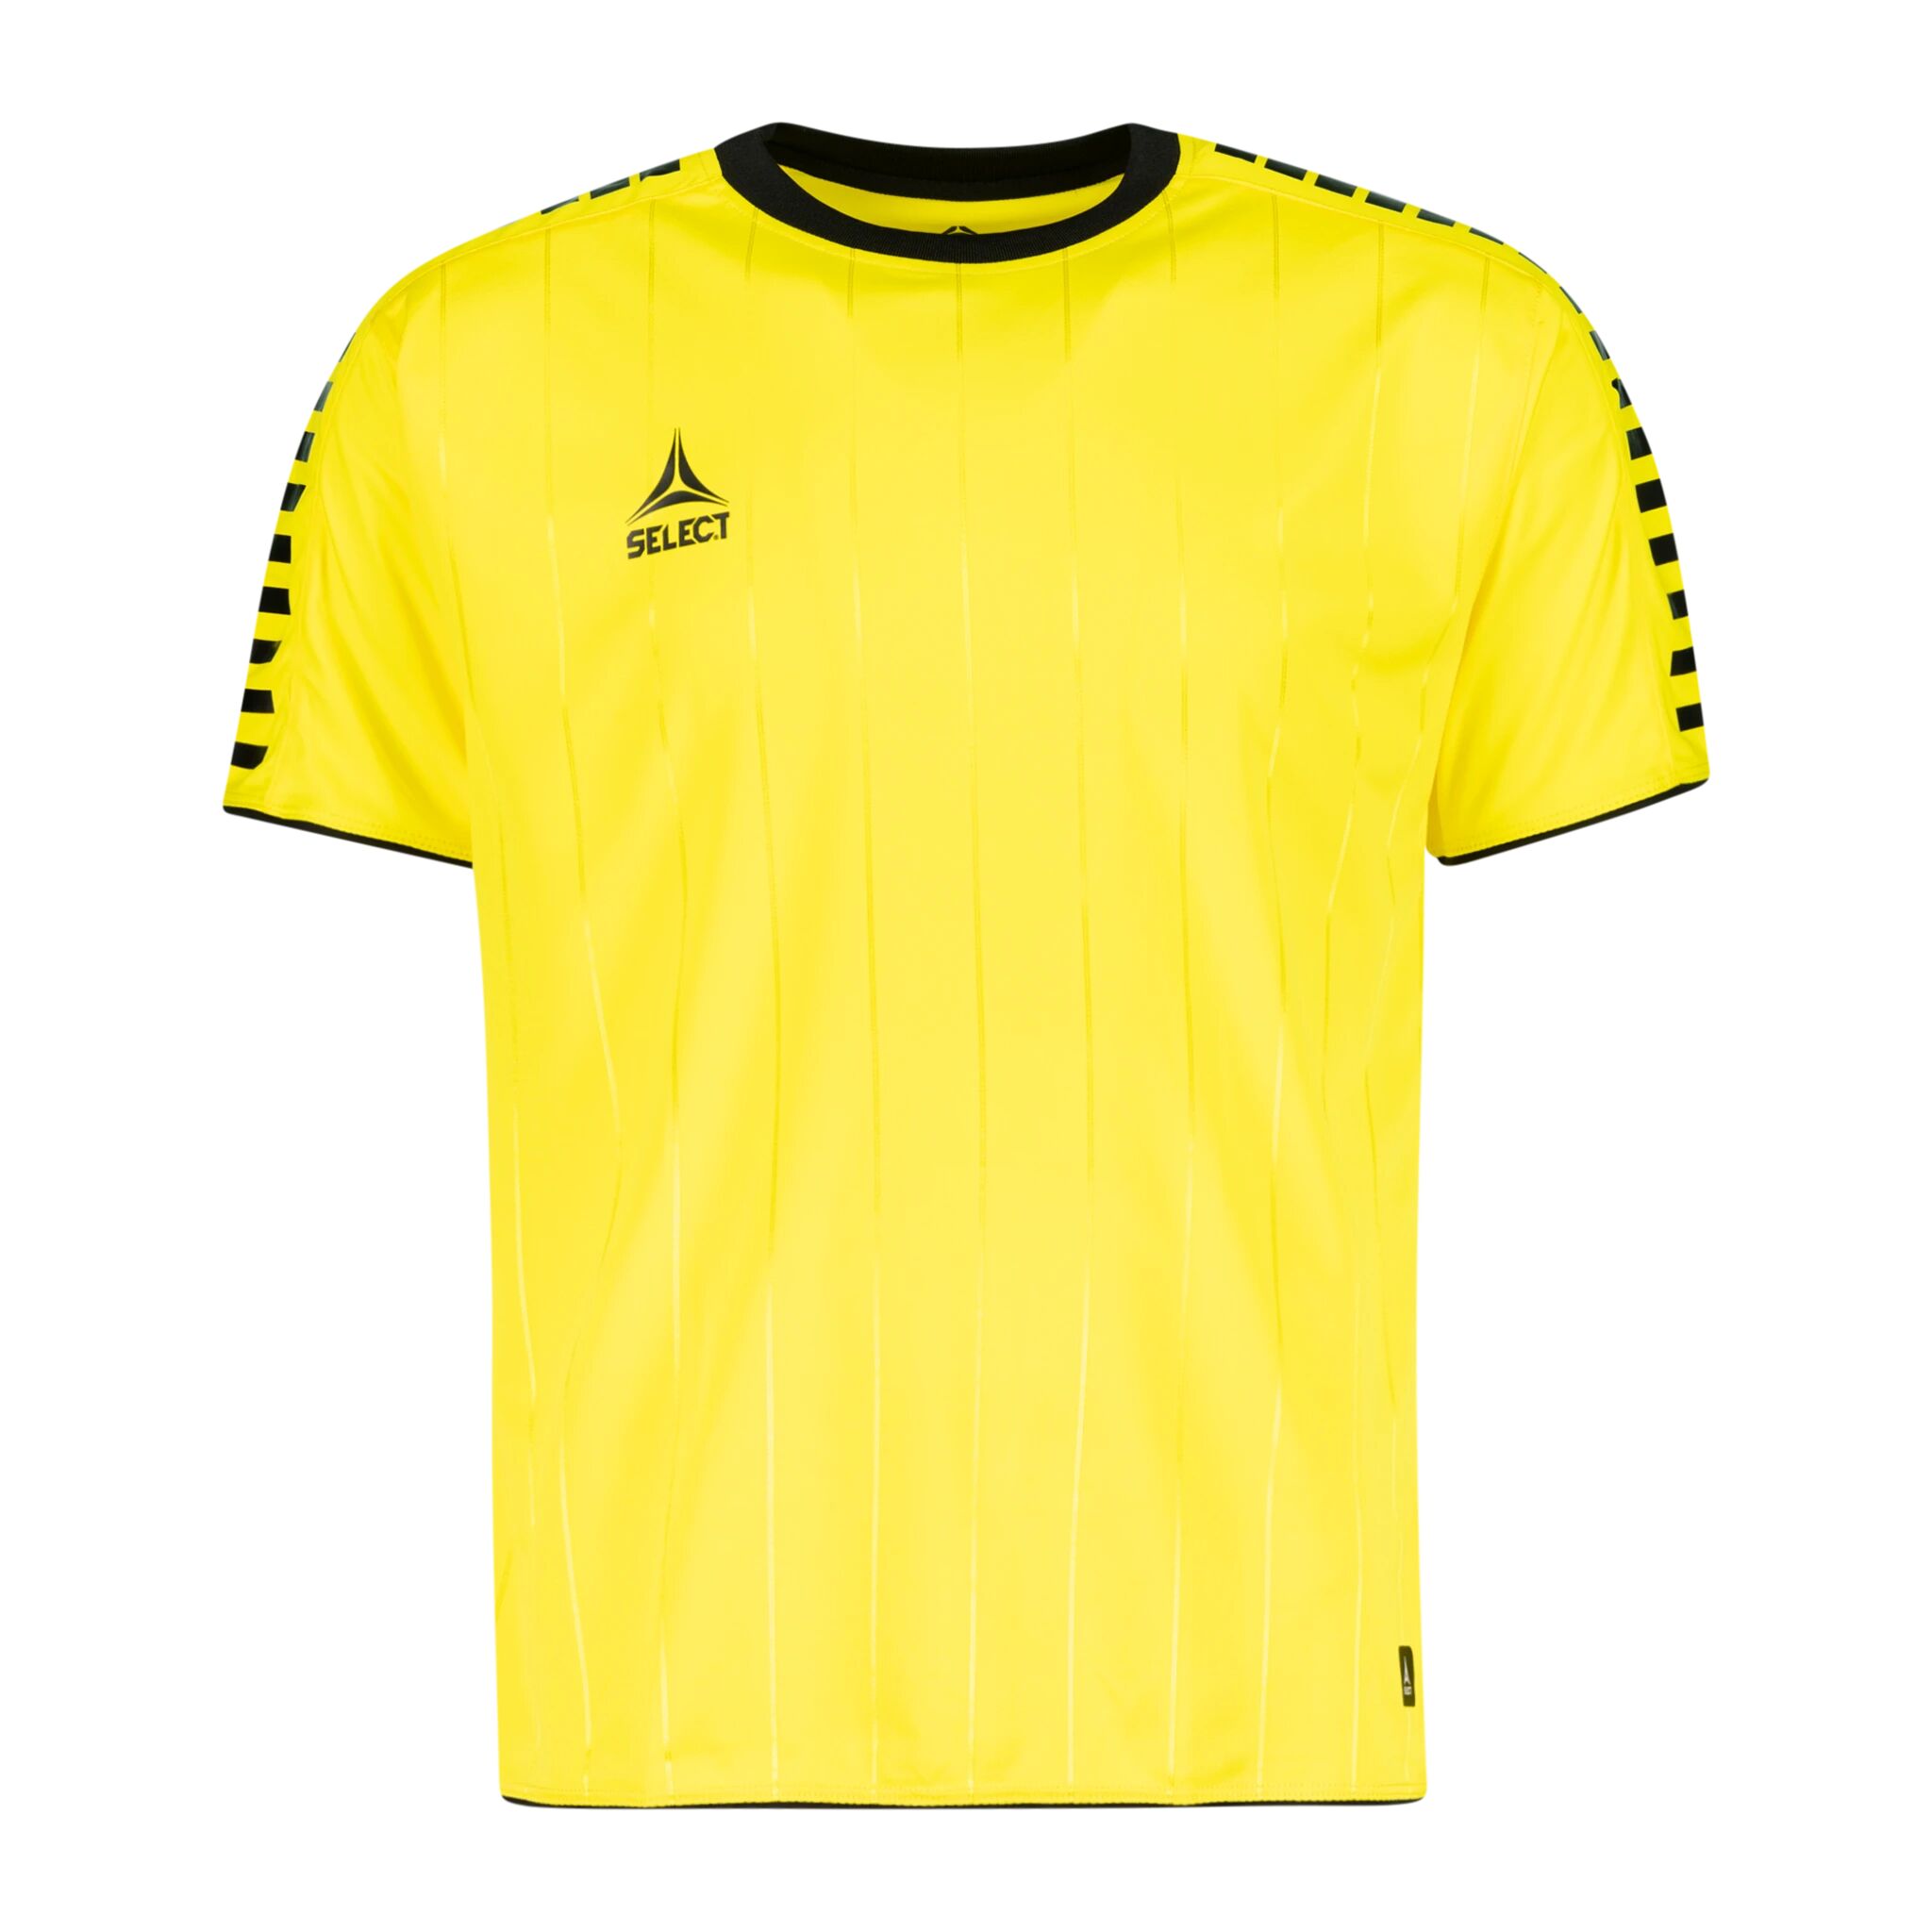 Select Player shirt S/S Argentina, fotballtrøye senior XXXL Yellow/Black